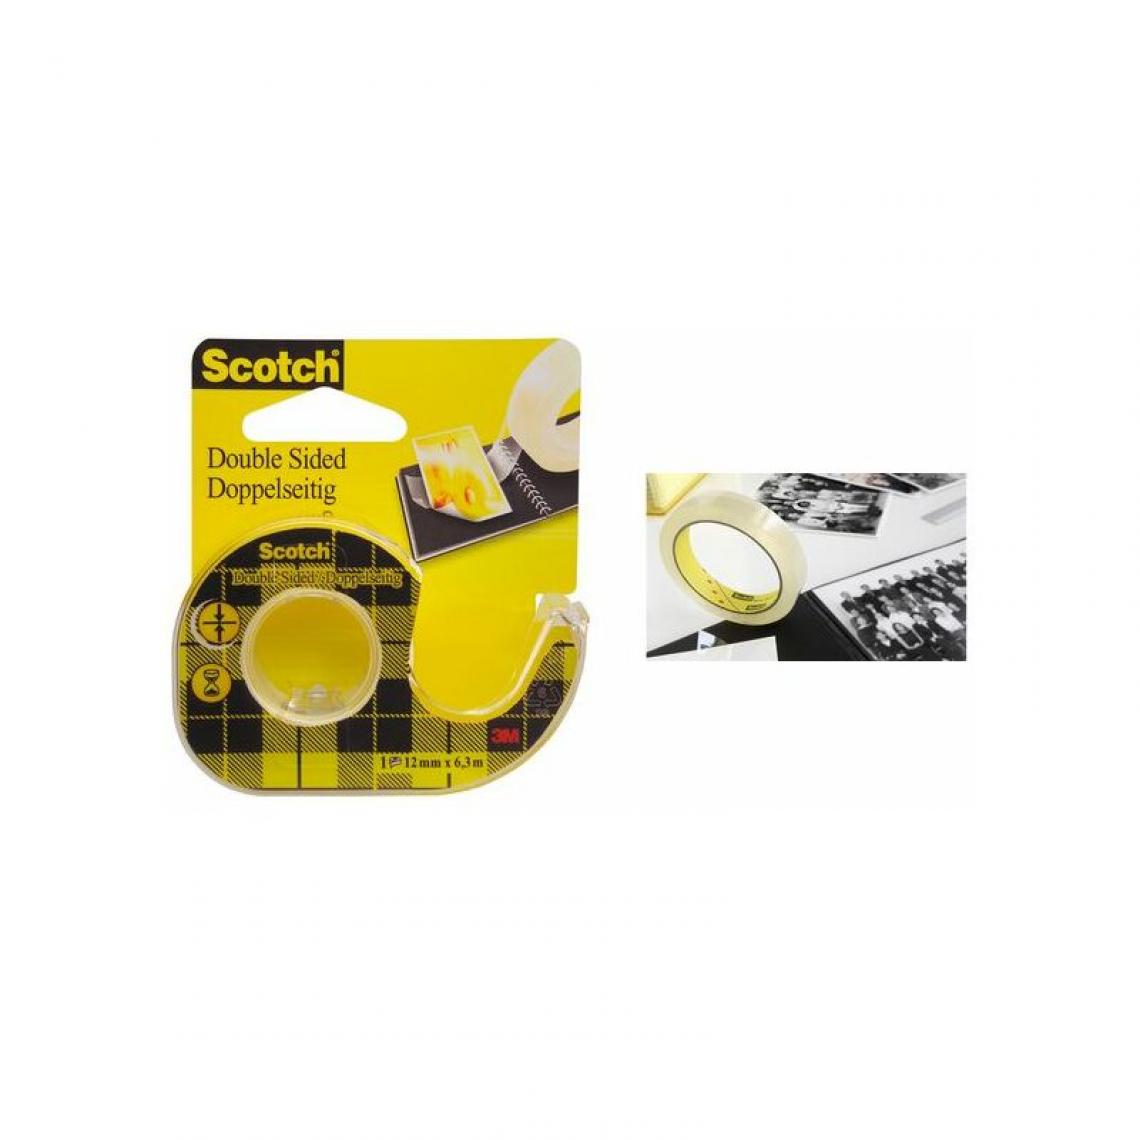 Scotch - Scotch Ruban adhésif double face 665, 12 mm x 6,3 m () - Colles et pistolets à colle